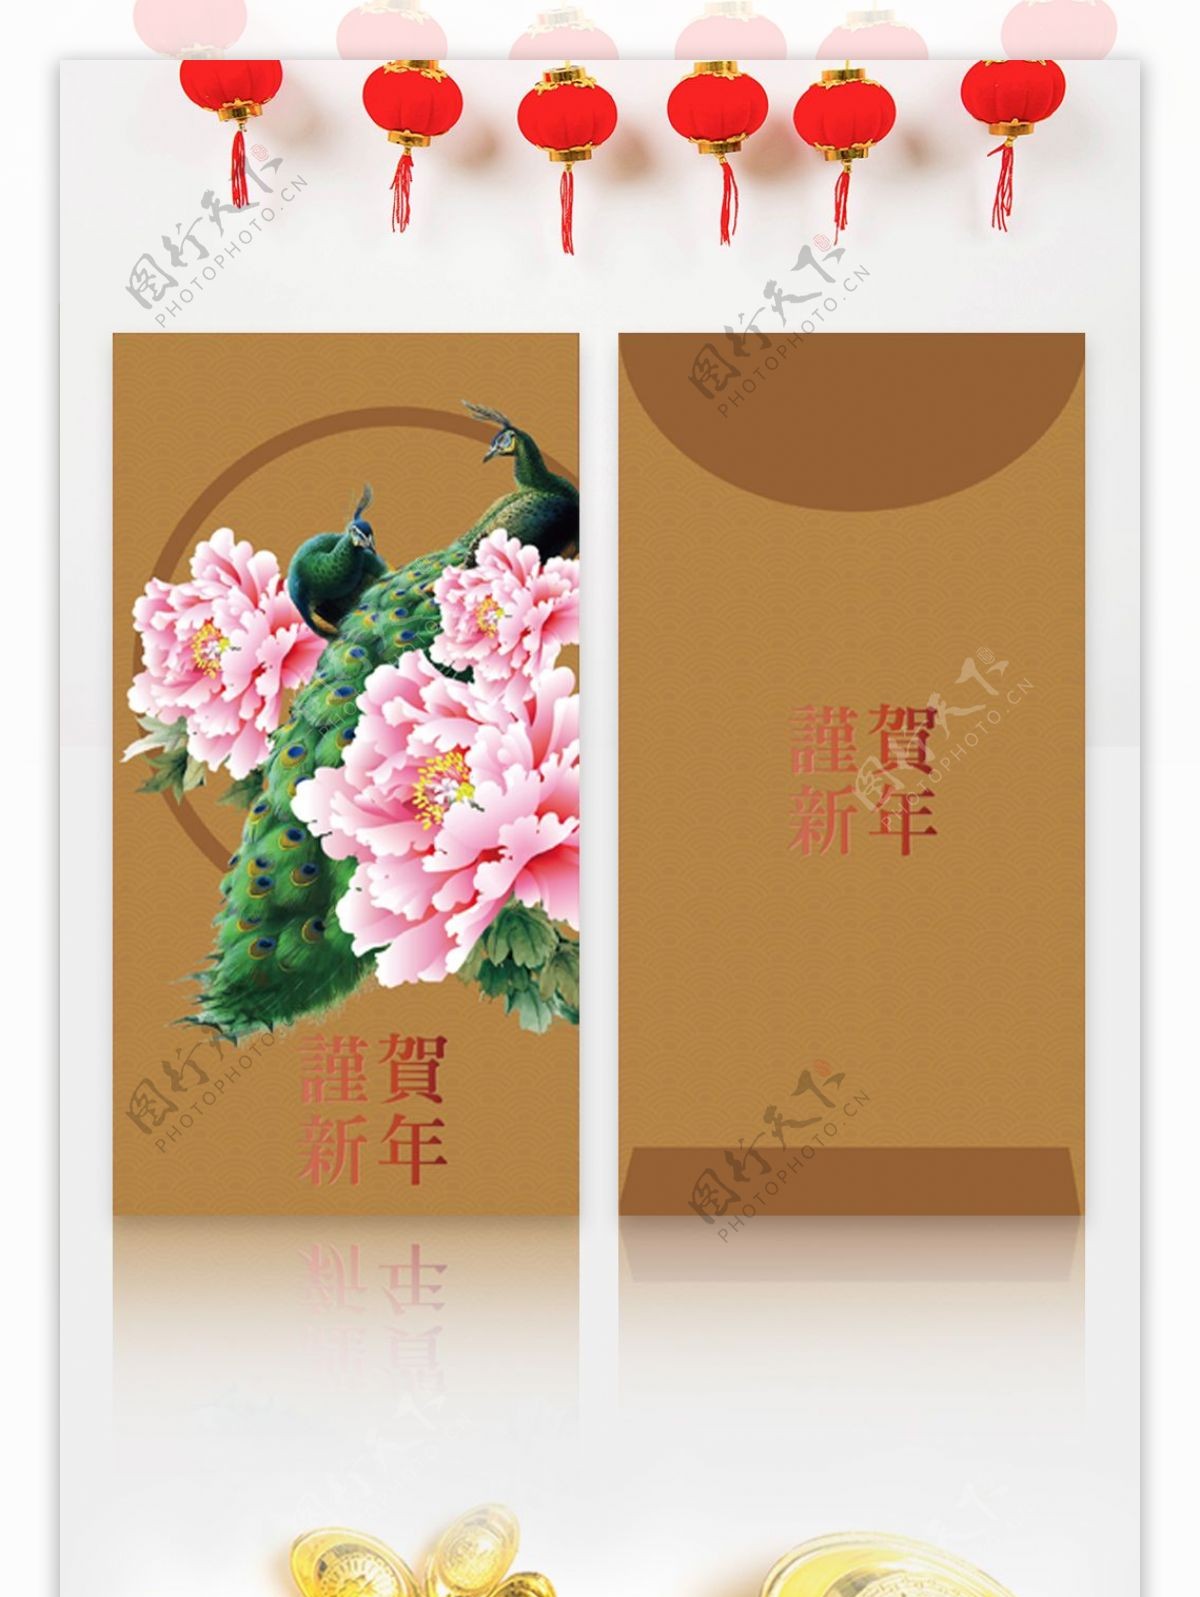 中国风牡丹孔雀新年红包矢量文件